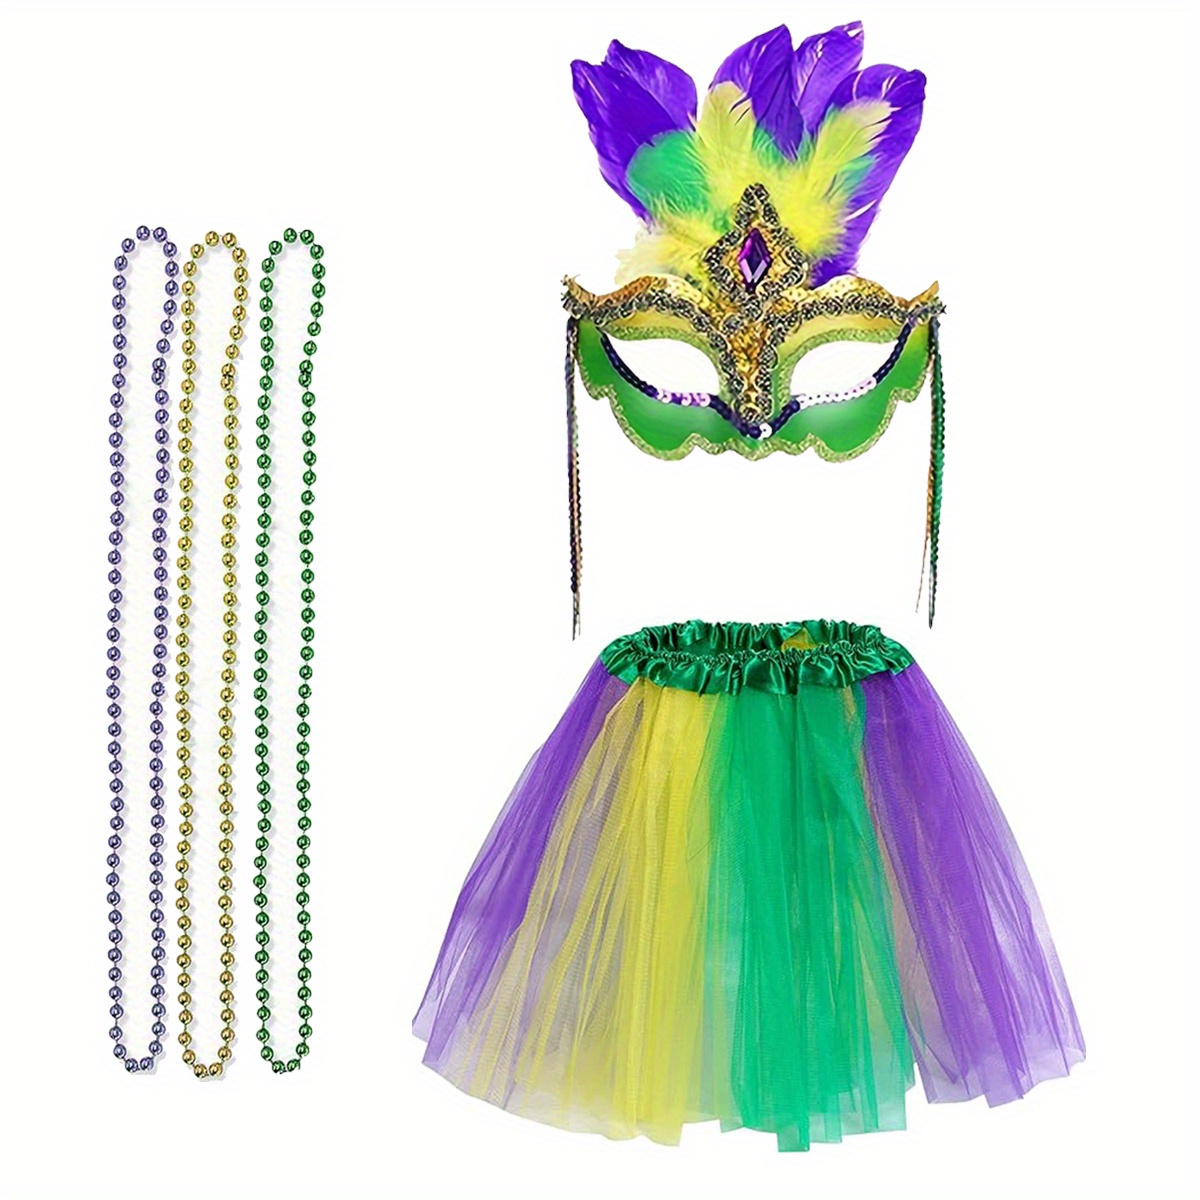 Máscaras de disfraz de Mardi Gras, máscaras de plumas verdes y moradas para  disfraces, cosplay, carnaval, fiesta de máscaras, suministros de